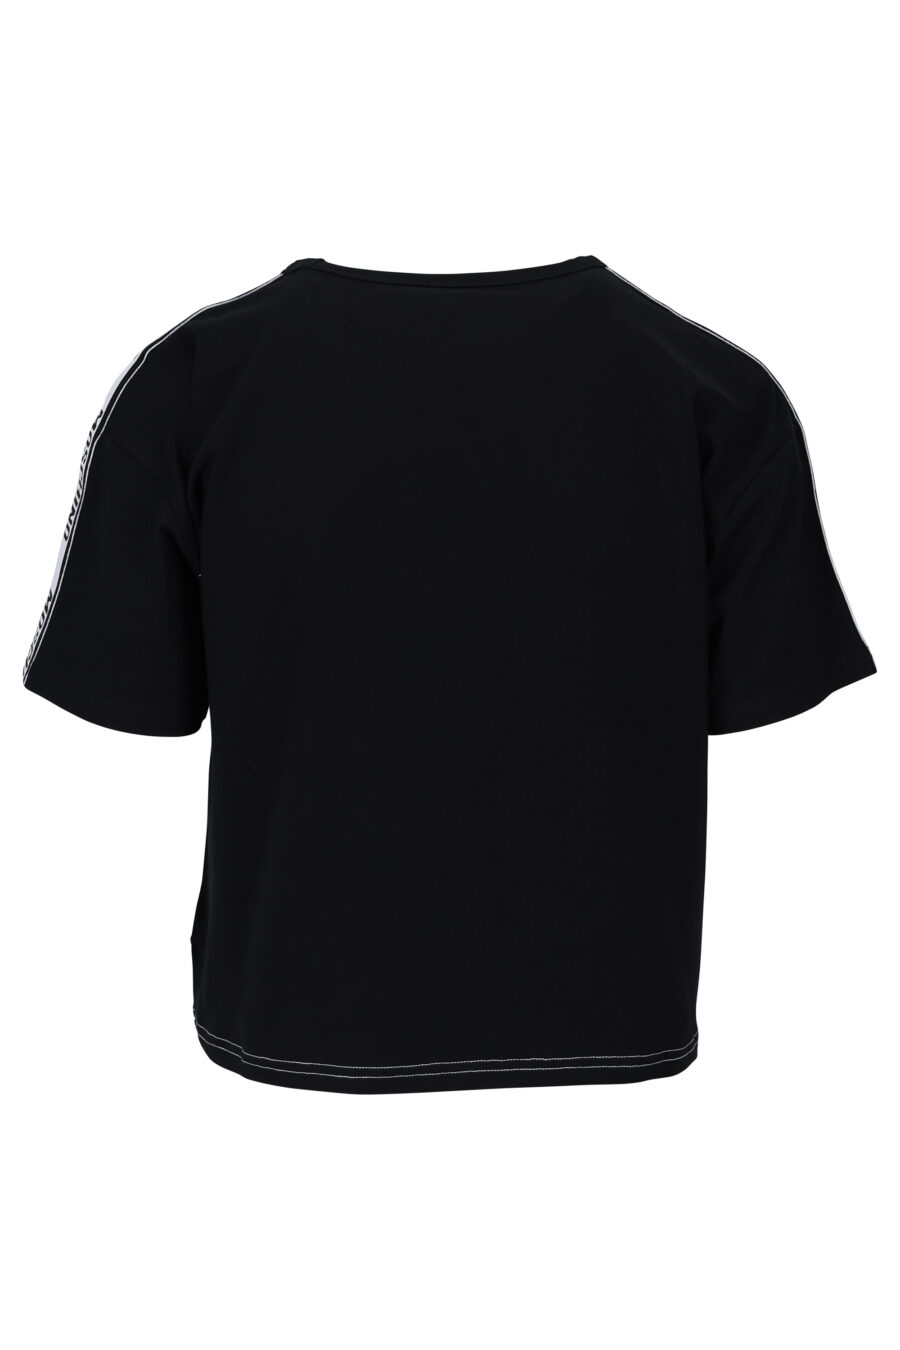 Weißes T-Shirt mit schwarzen Ärmeln und Rücken und Schleifenlogo - 667113062037 1